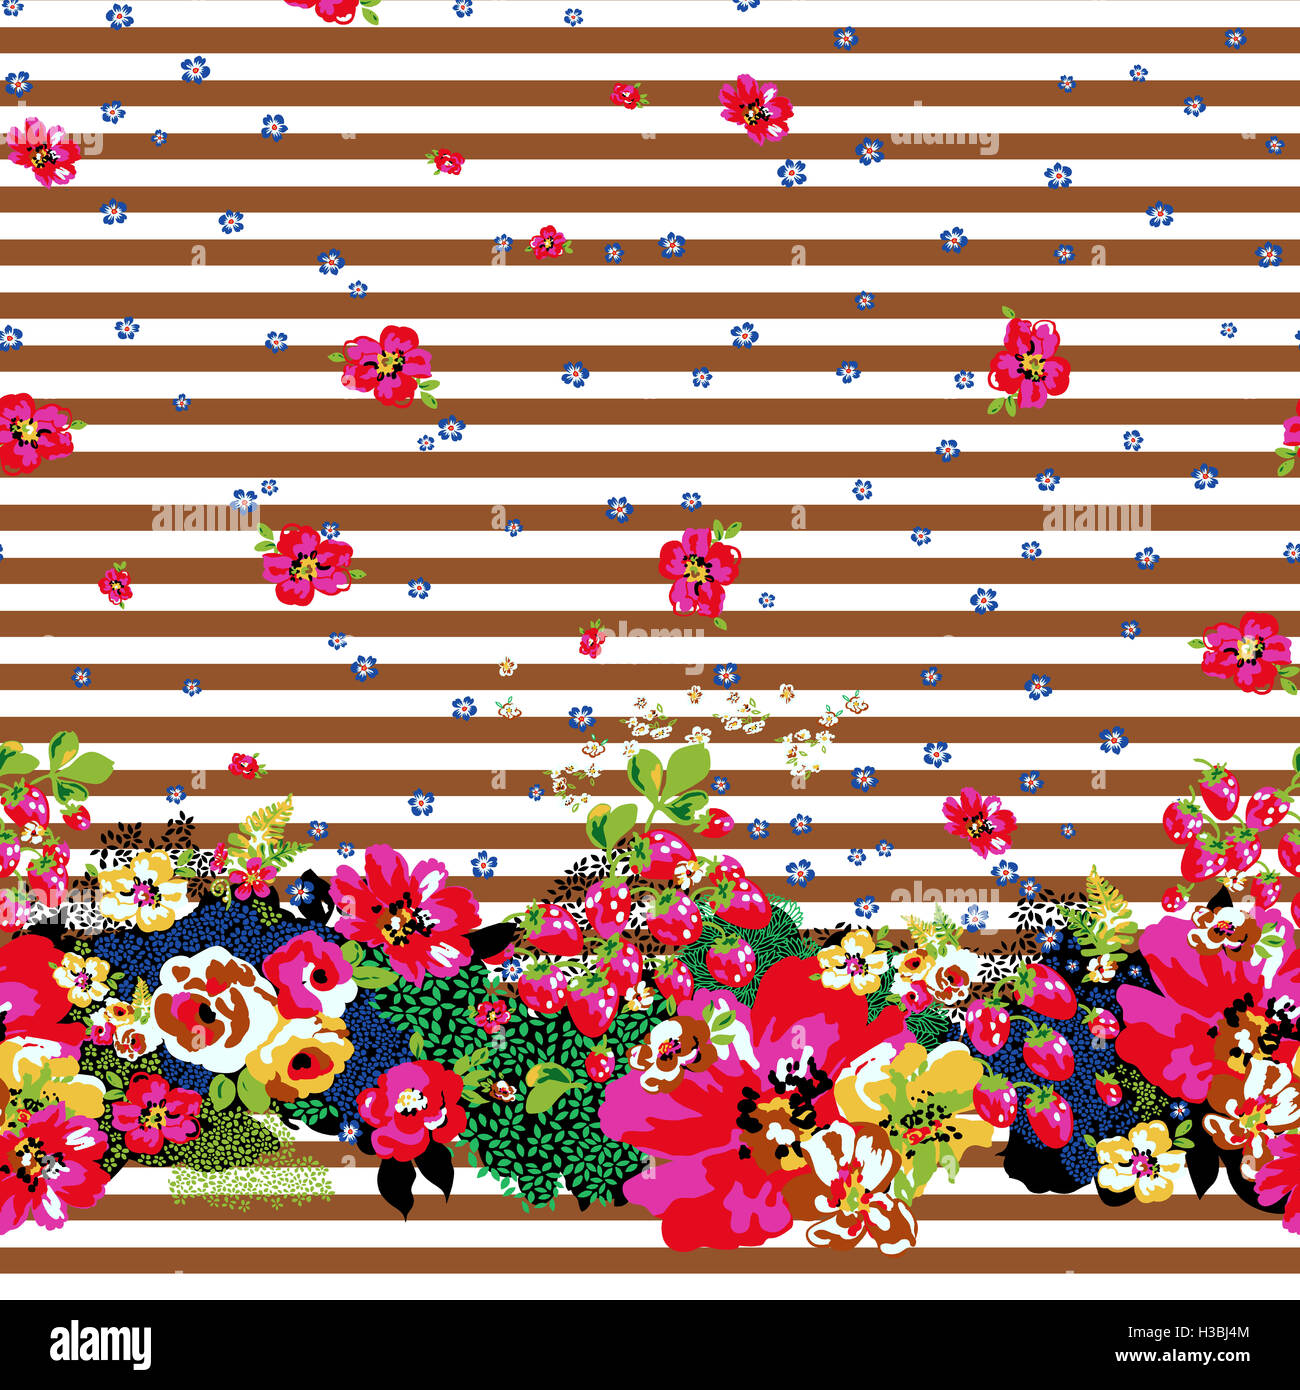 Dernière Colorful Background Design imprimé avec des fleurs Banque D'Images